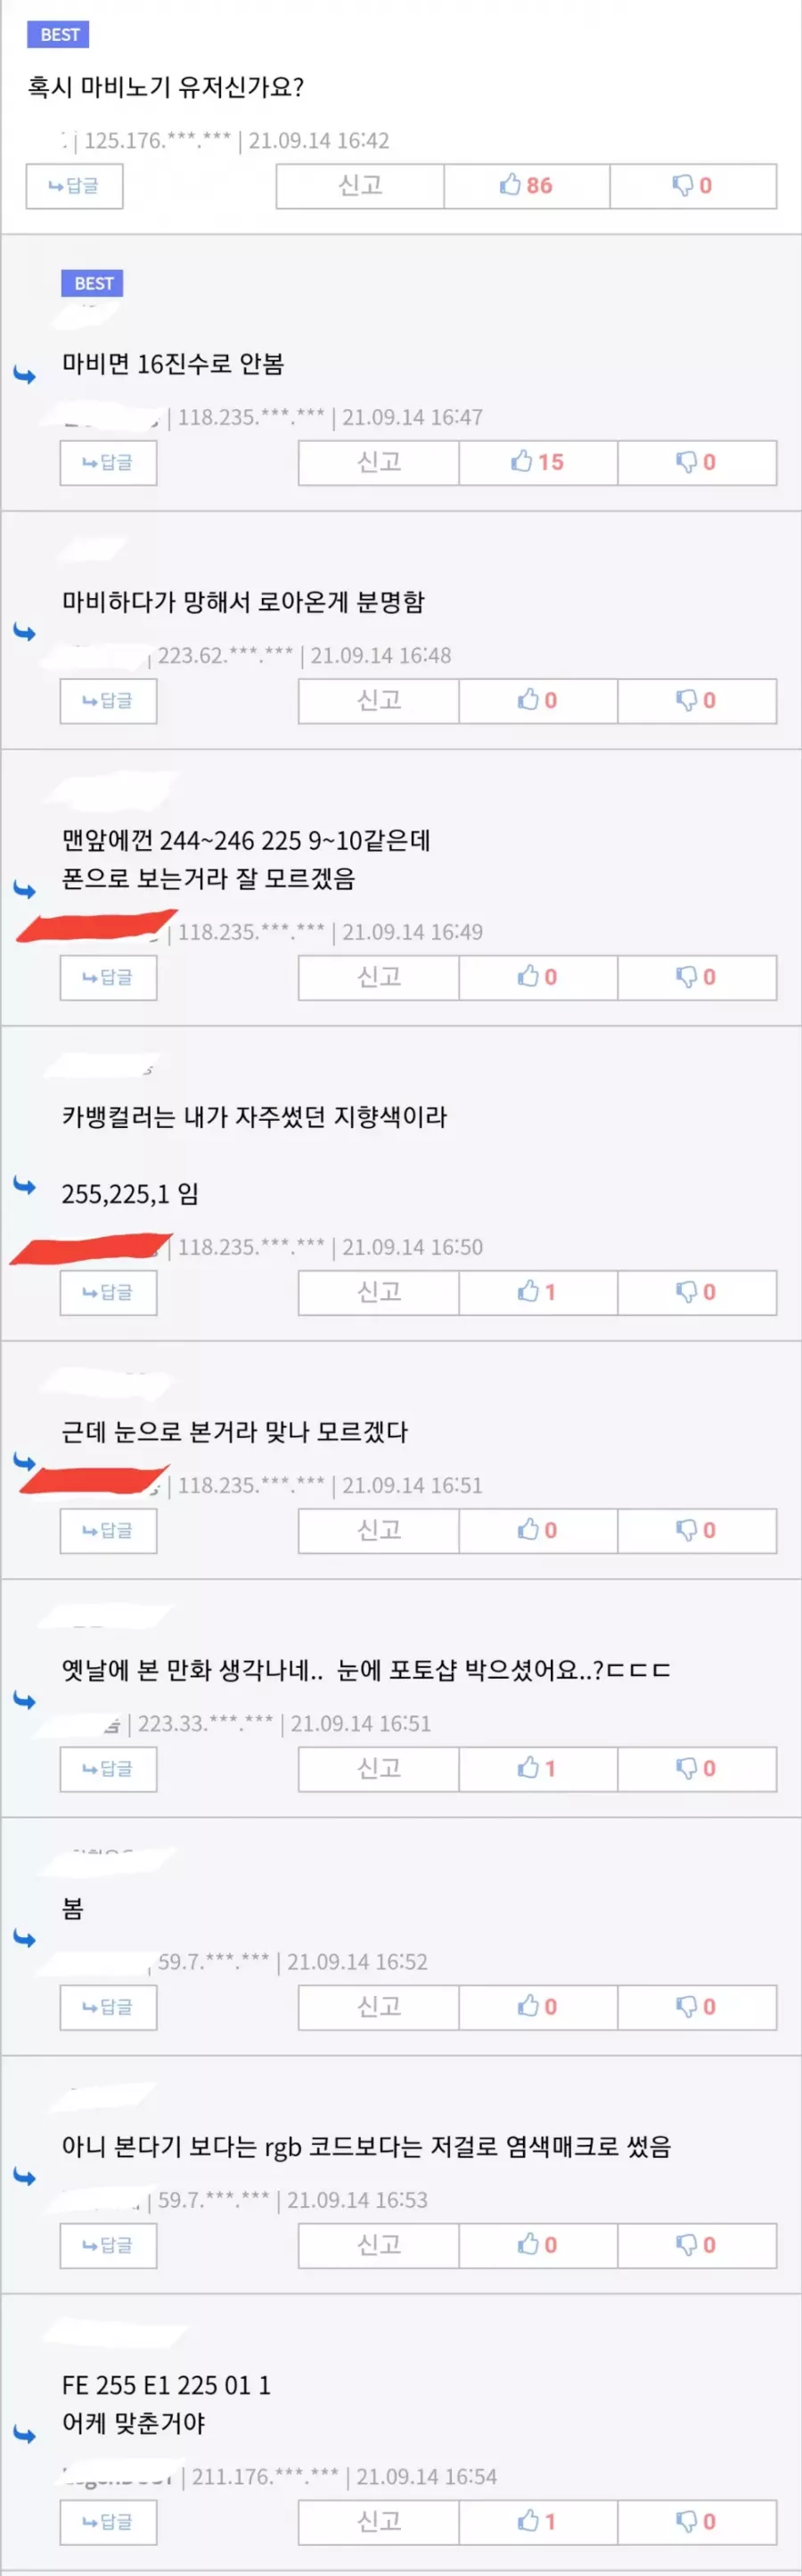 카카오 그룹이 불편하다는 네티즌 -cboard